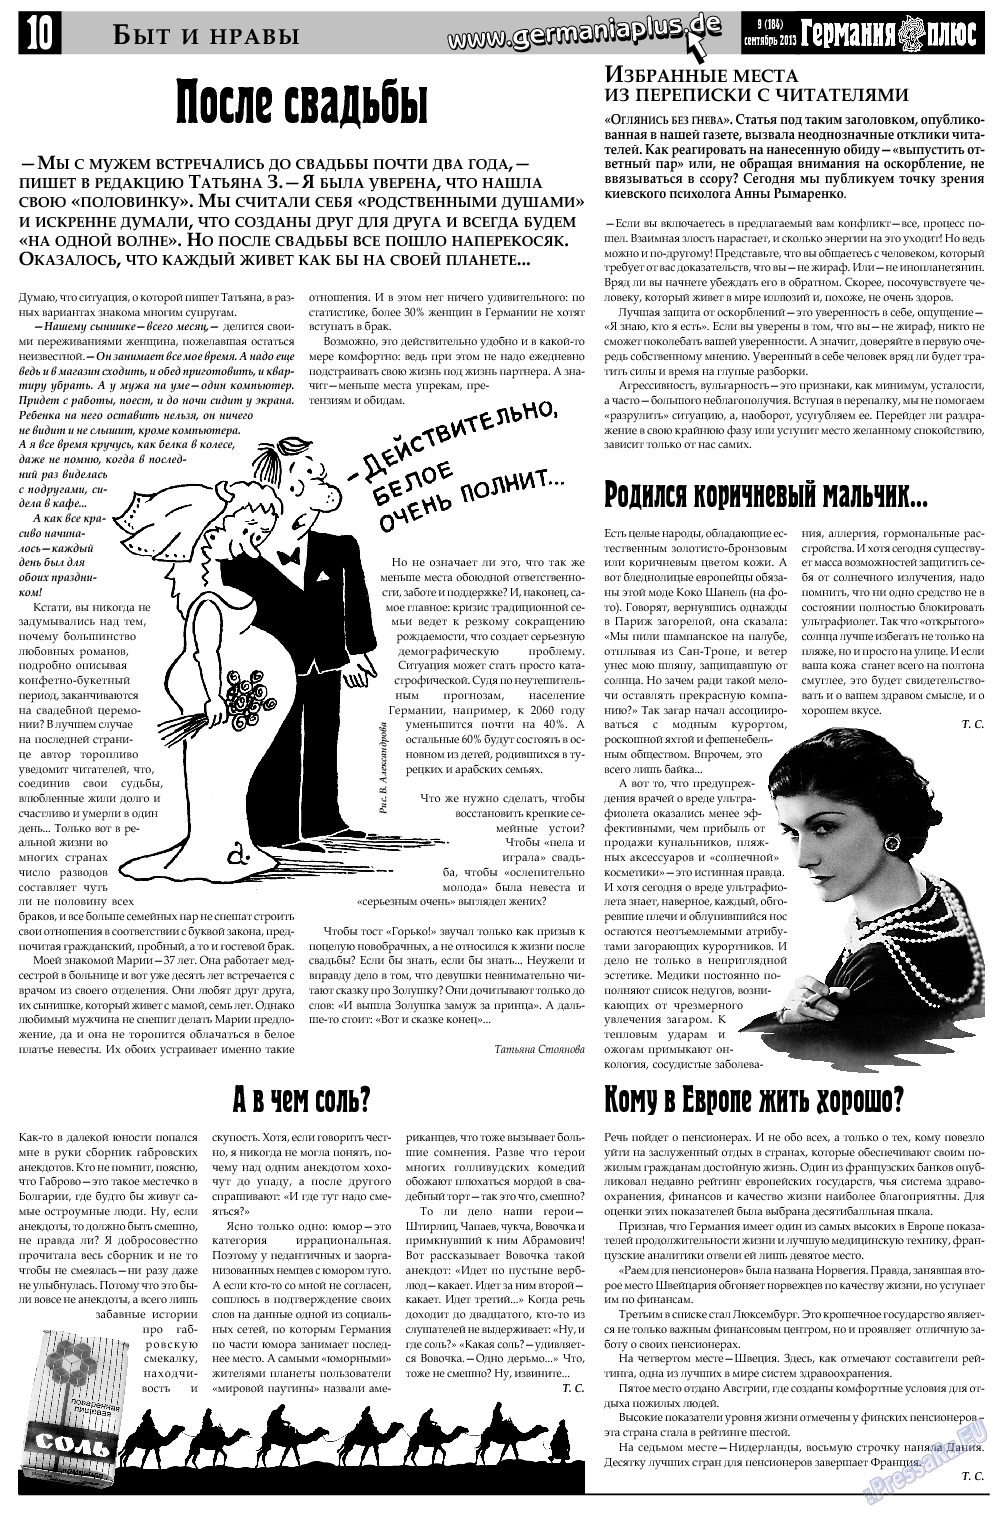 Германия плюс, газета. 2013 №9 стр.10